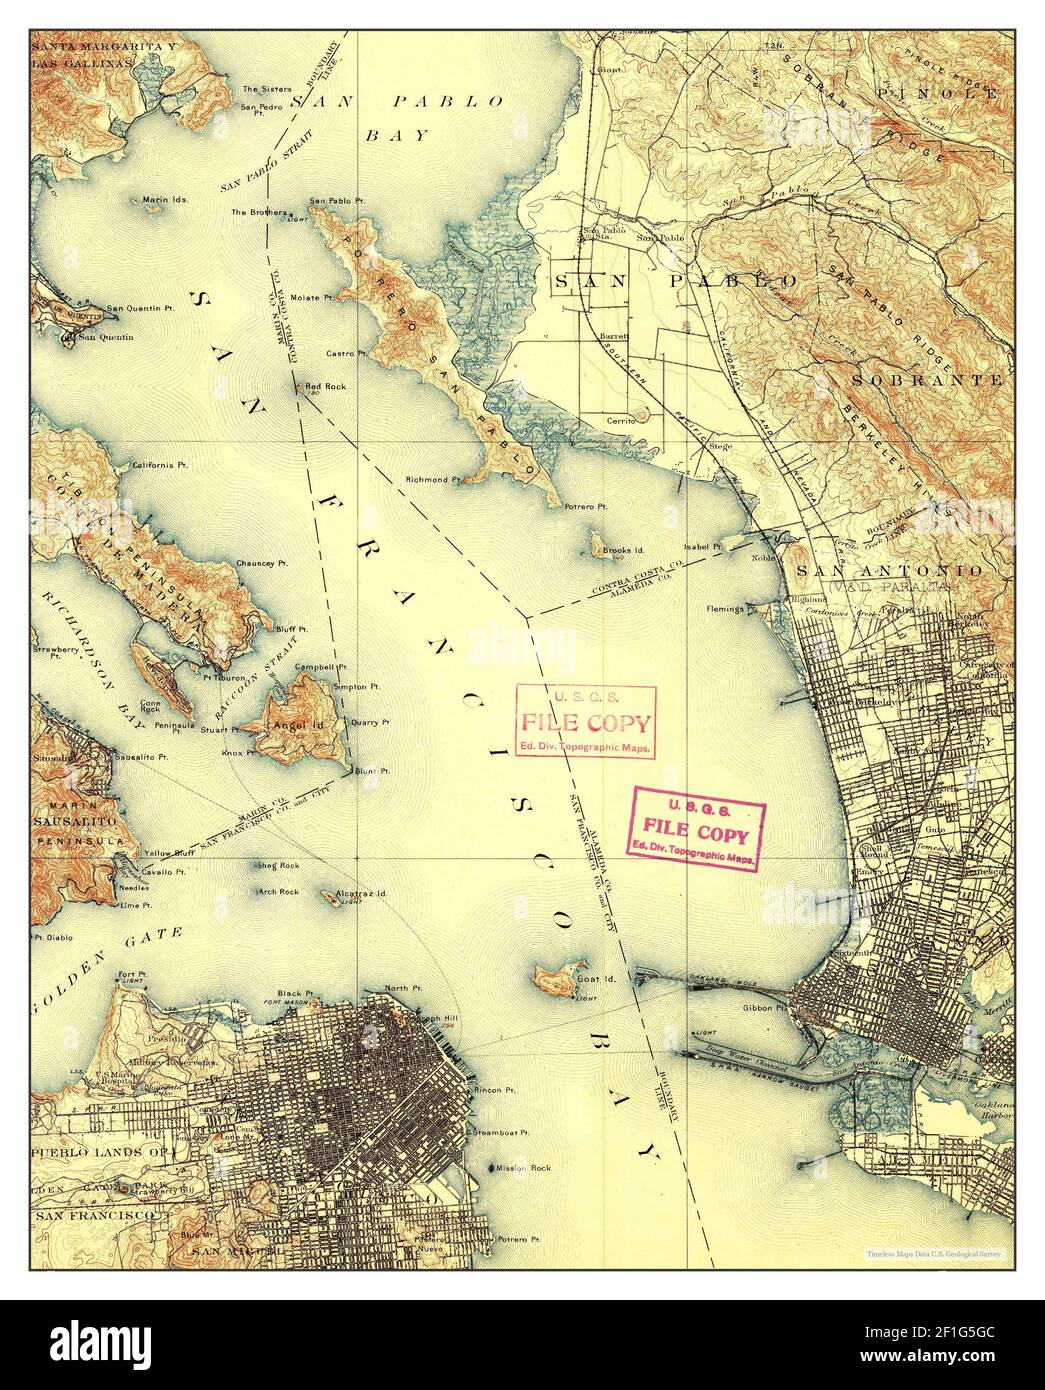 San Francisco, California, Karte 1899, 1:62500, Vereinigte Staaten von Amerika von Timeless Maps, Daten U.S. Geological Survey Stockfoto